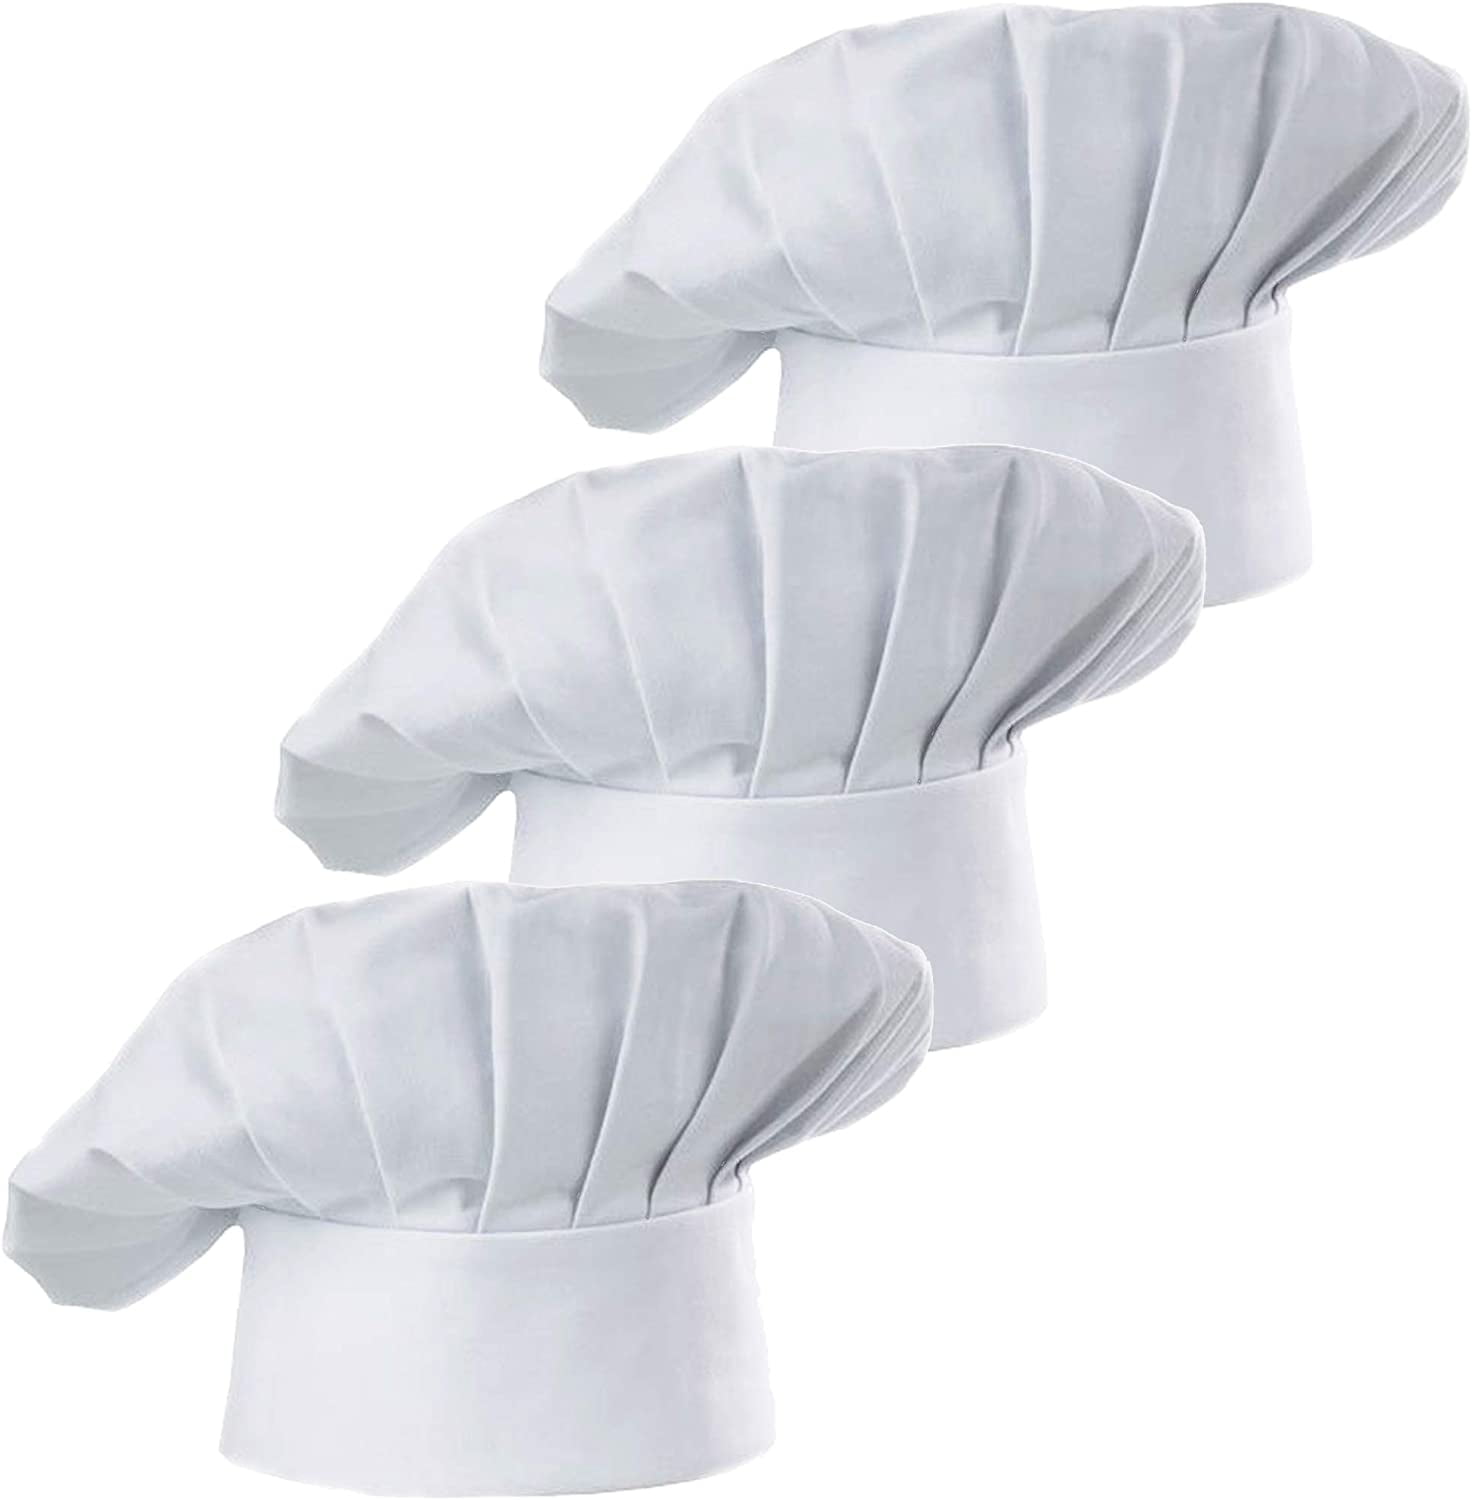 USA Seller Black Chef/Baker Hat Cotton Blend Adjustable Velcro® Closure 